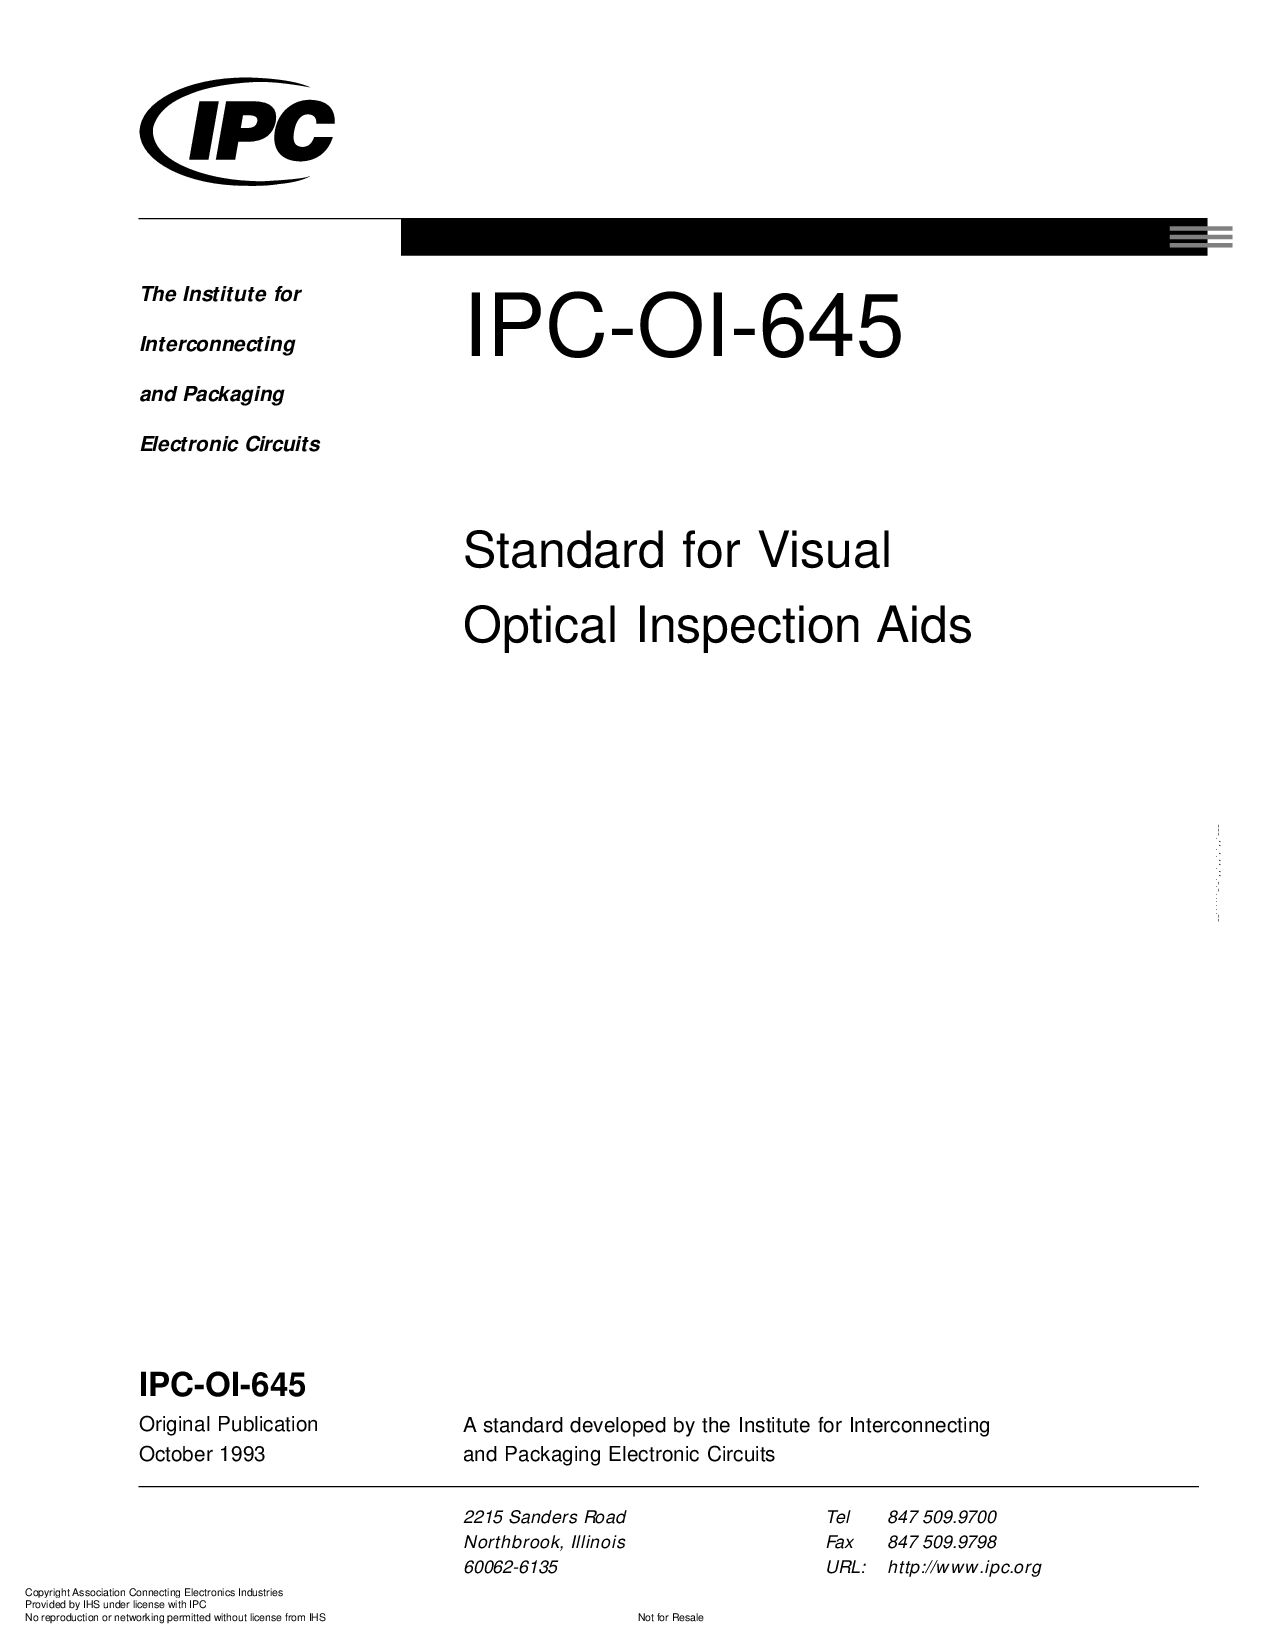 IPC OI-645-1993